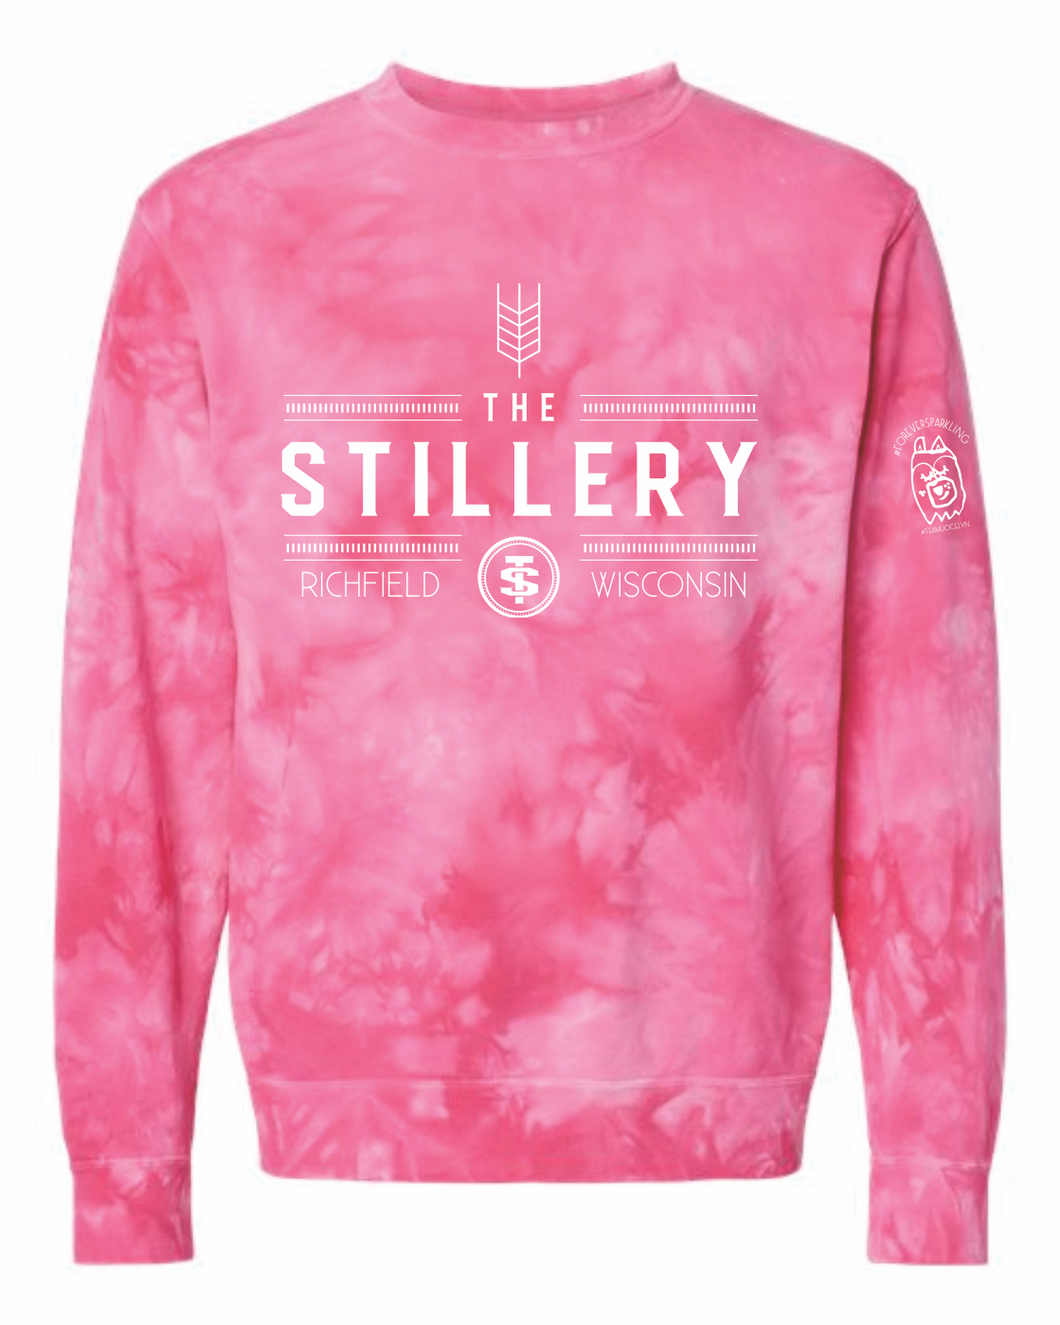 Stillery Crew Neck Pink Tie Dye Sweatshirt in honor of Jocelyn!